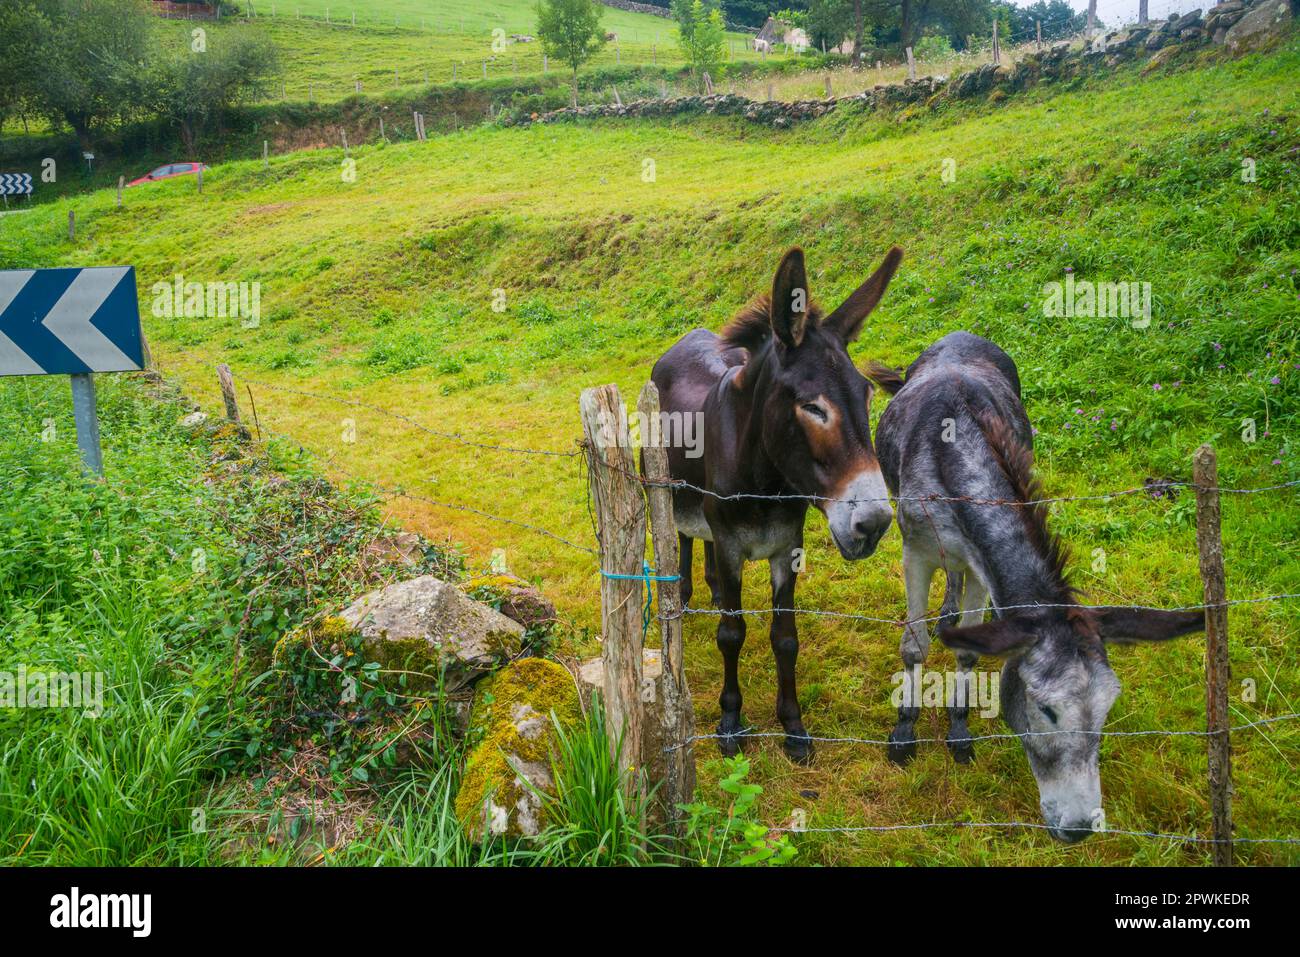 Two donkeys in a field. Stock Photo